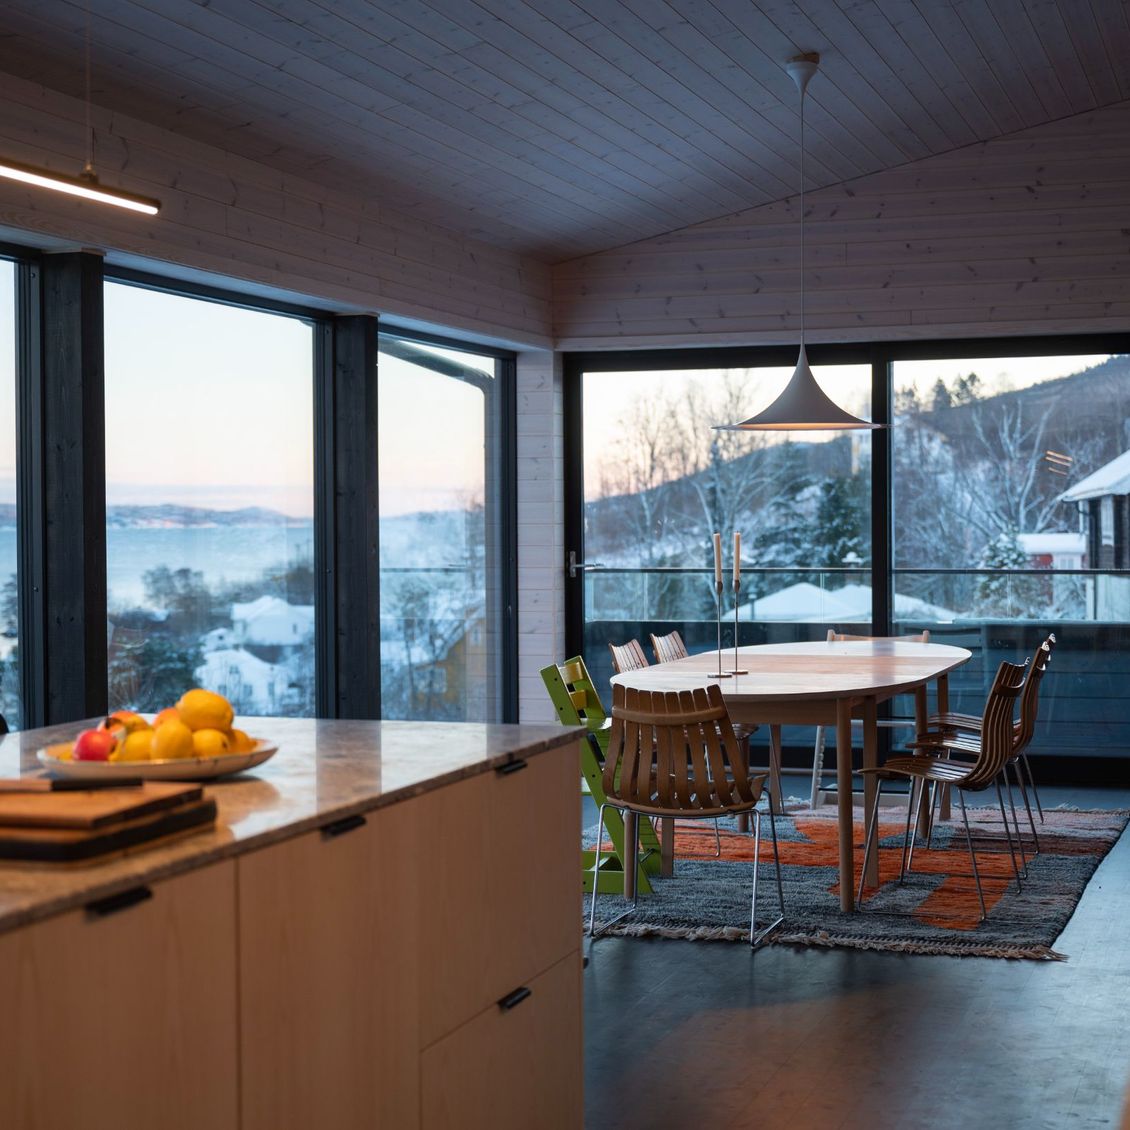 Bilde av kjøkken og spisestue med utsikten over fjorden i bakgrunnen